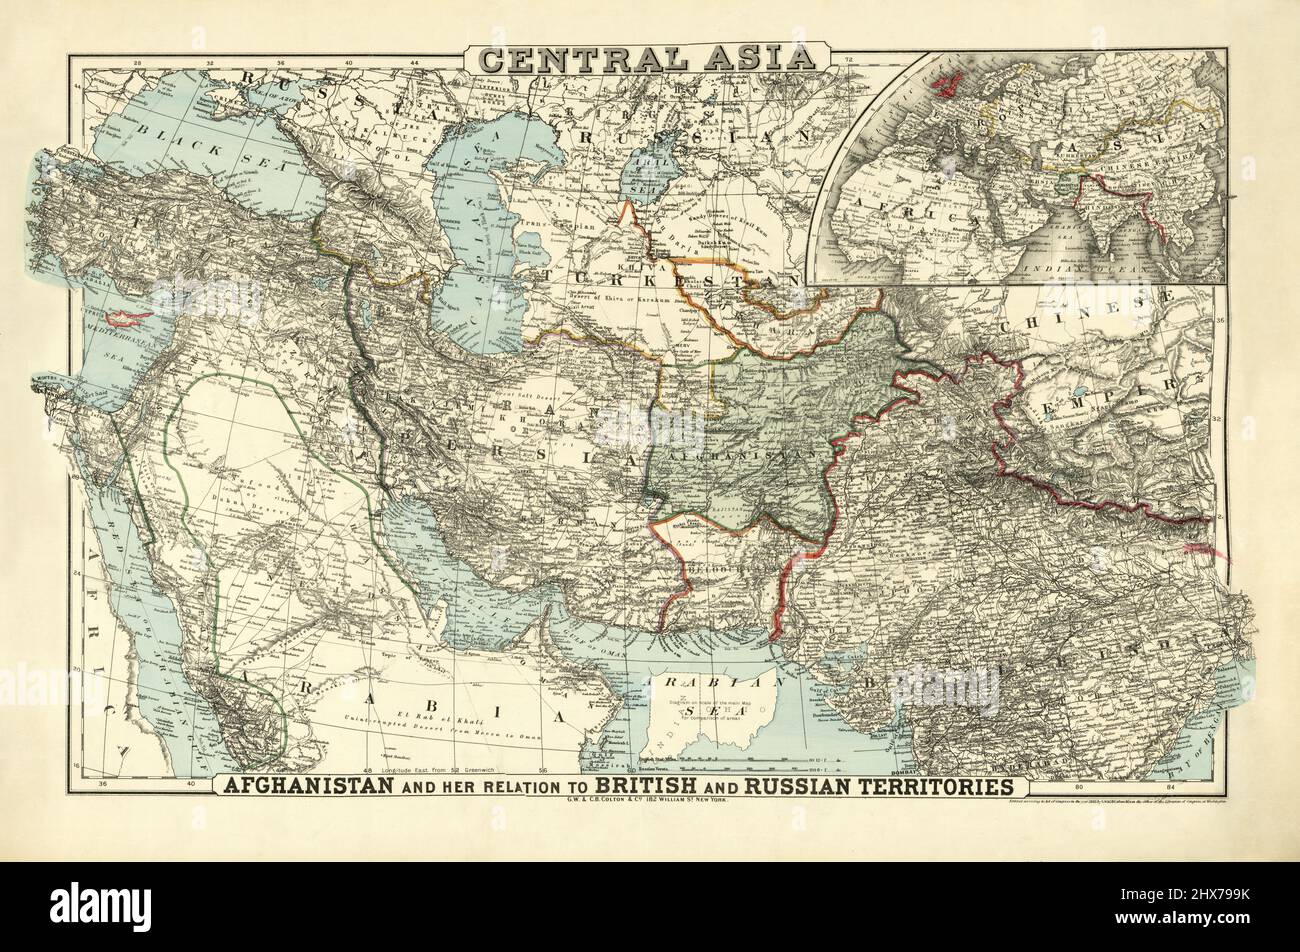 Asie centrale par G.W. ET C.B. Colton & Co. 1885. Moyen-Orient - Asie du Sud - Arabie. 1885. Banque D'Images